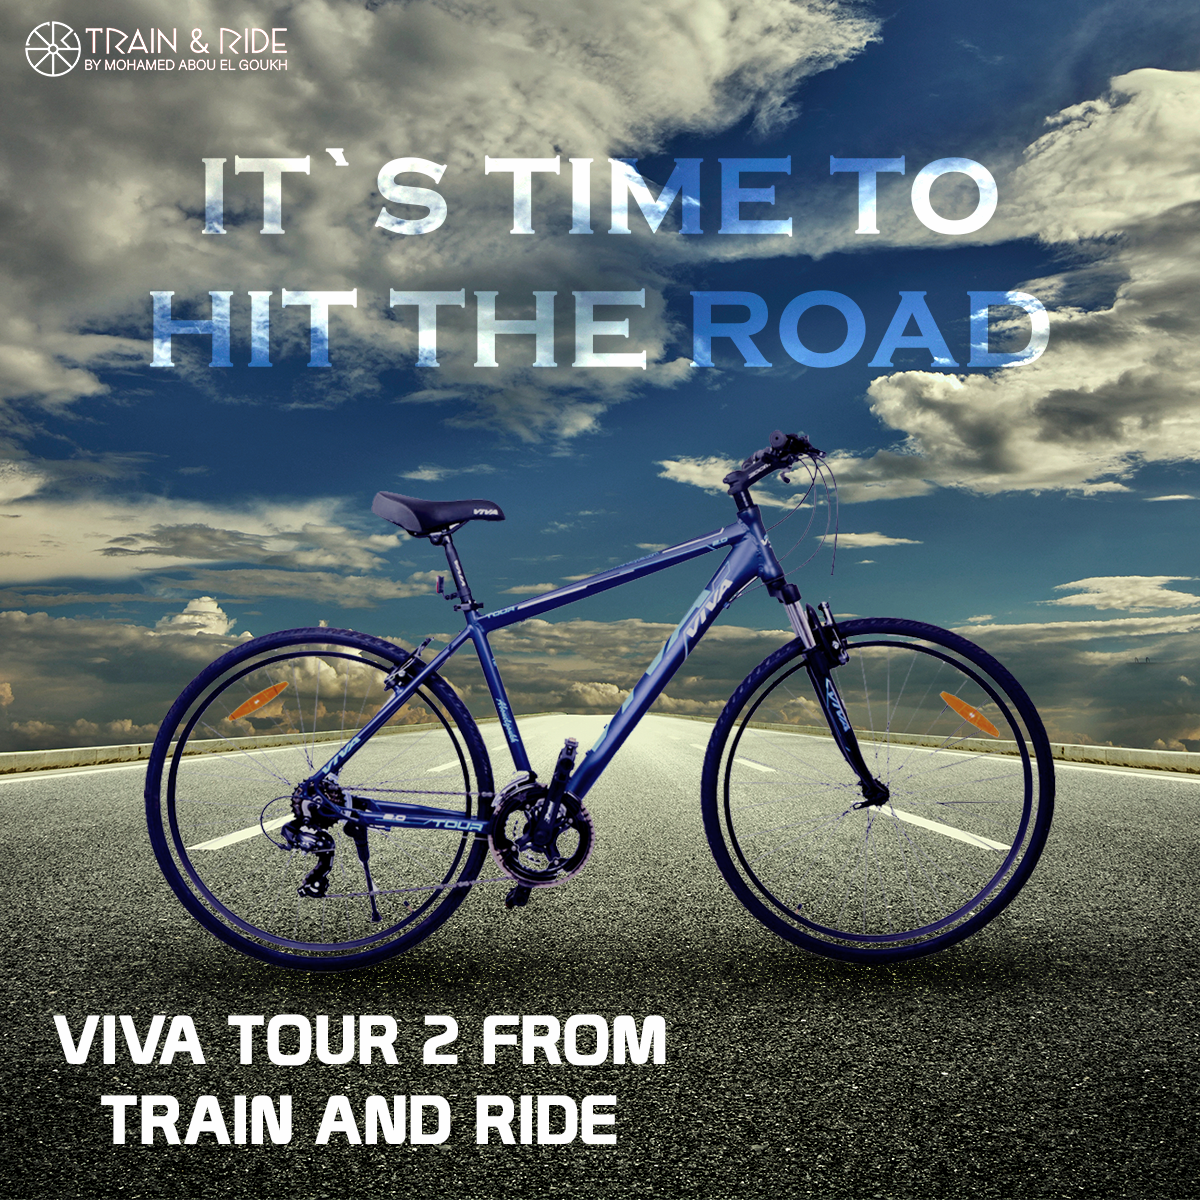 Train-Ride Social Media Marketing